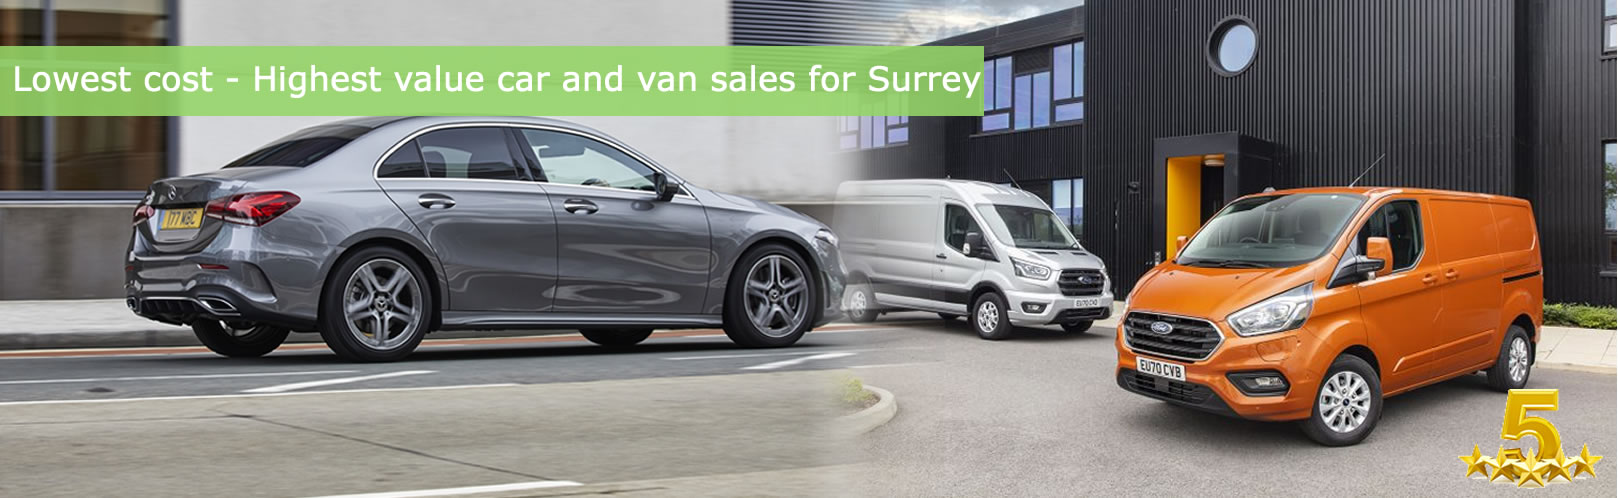 Van sales Surrey